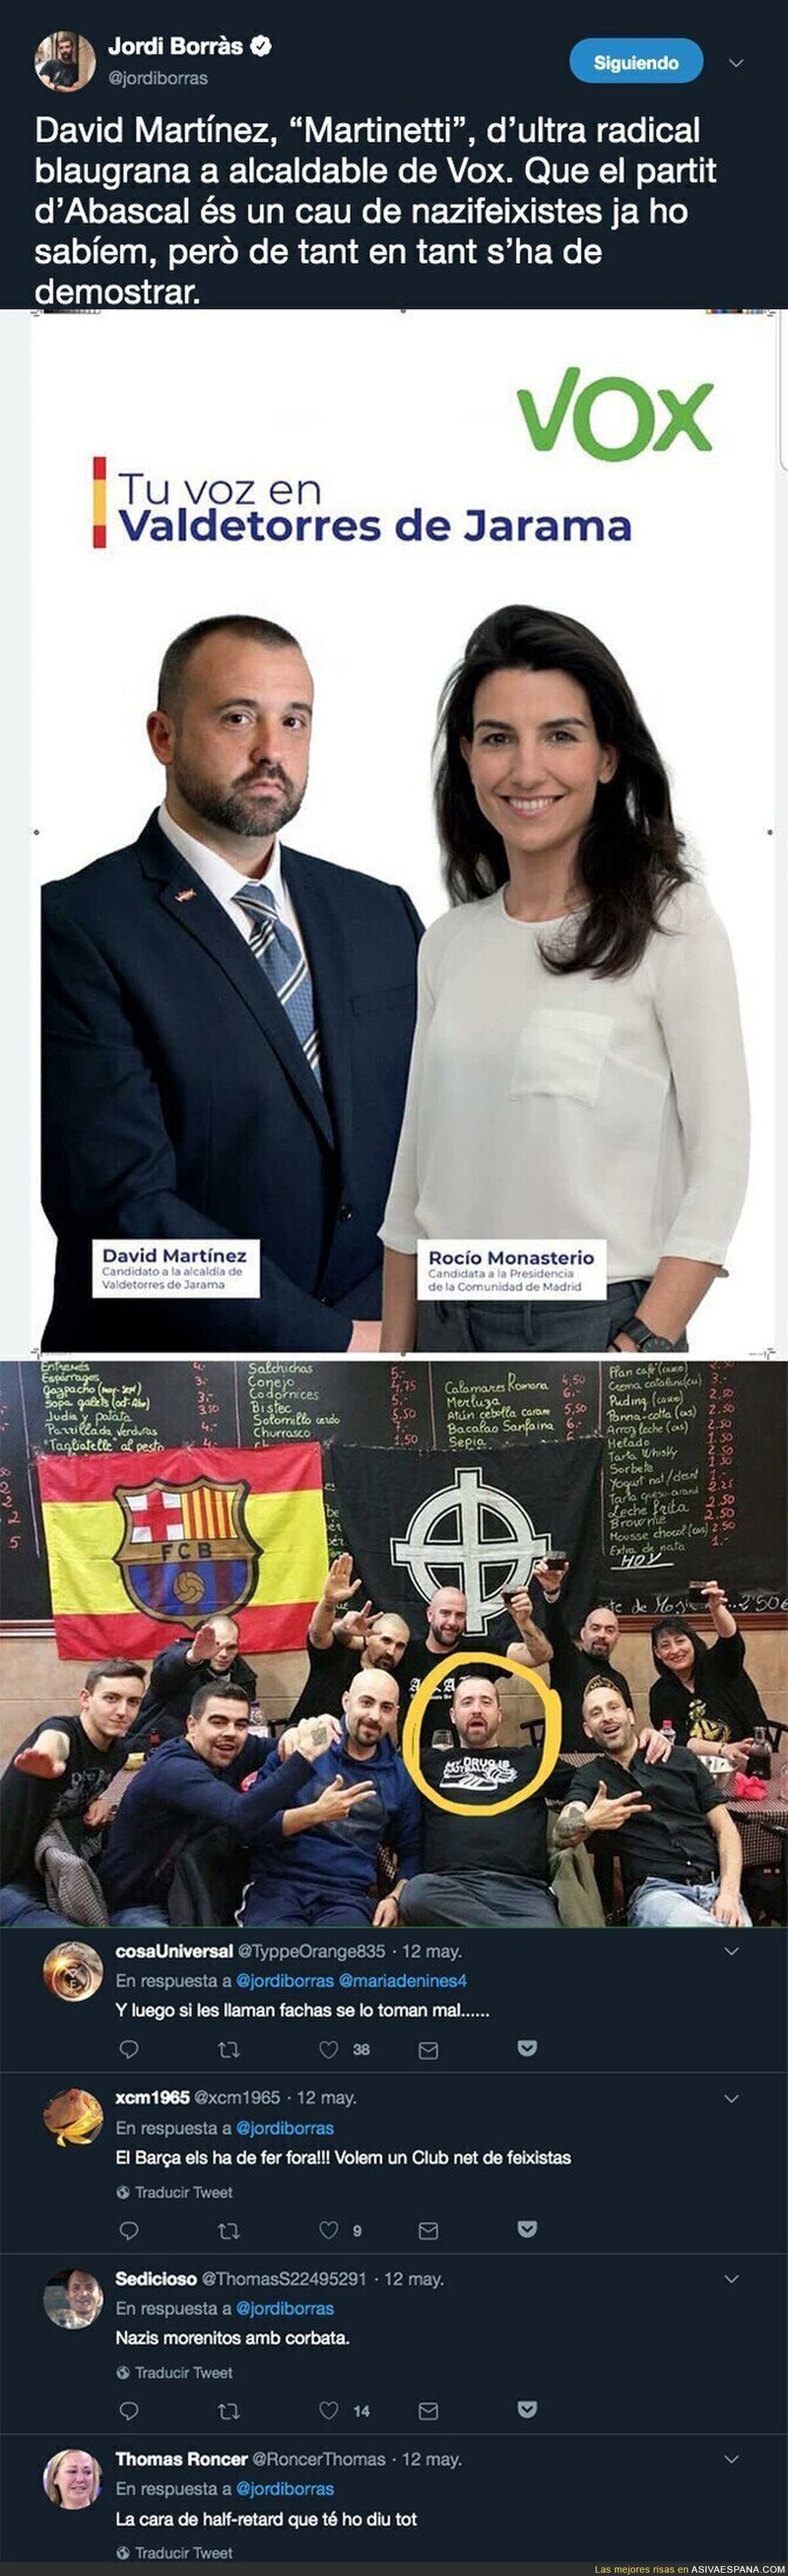 Encuentran un ultra del Barça como candidato a alcalde por VOX en Valdetorres de Jarama